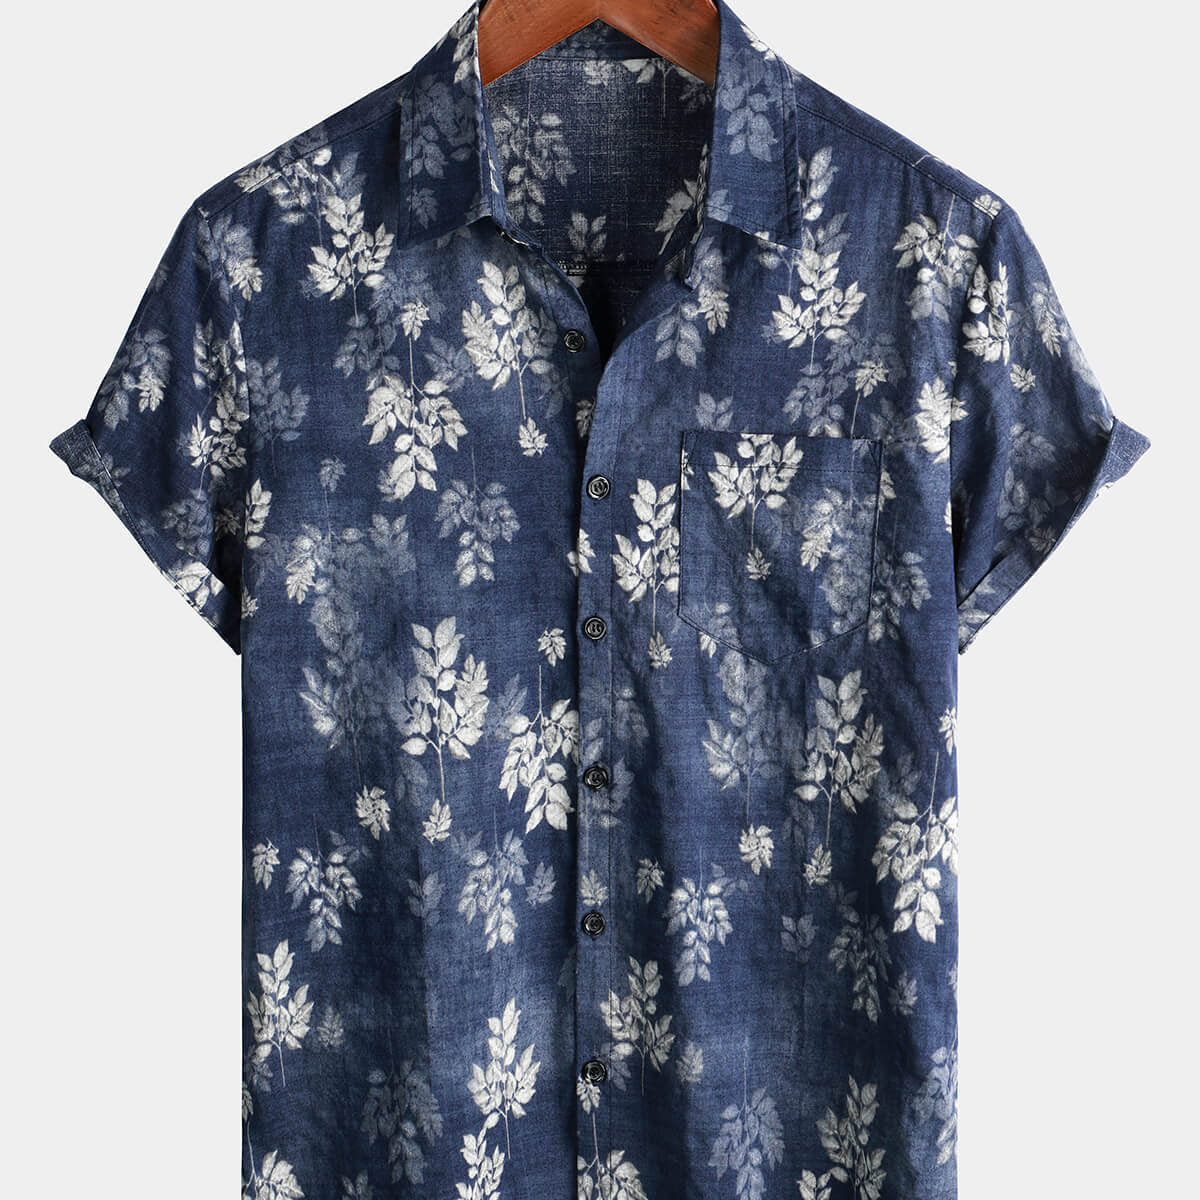 Chemise hawaïenne boutonnée bleu marine pour homme avec poche en coton vintage à manches courtes des années 70